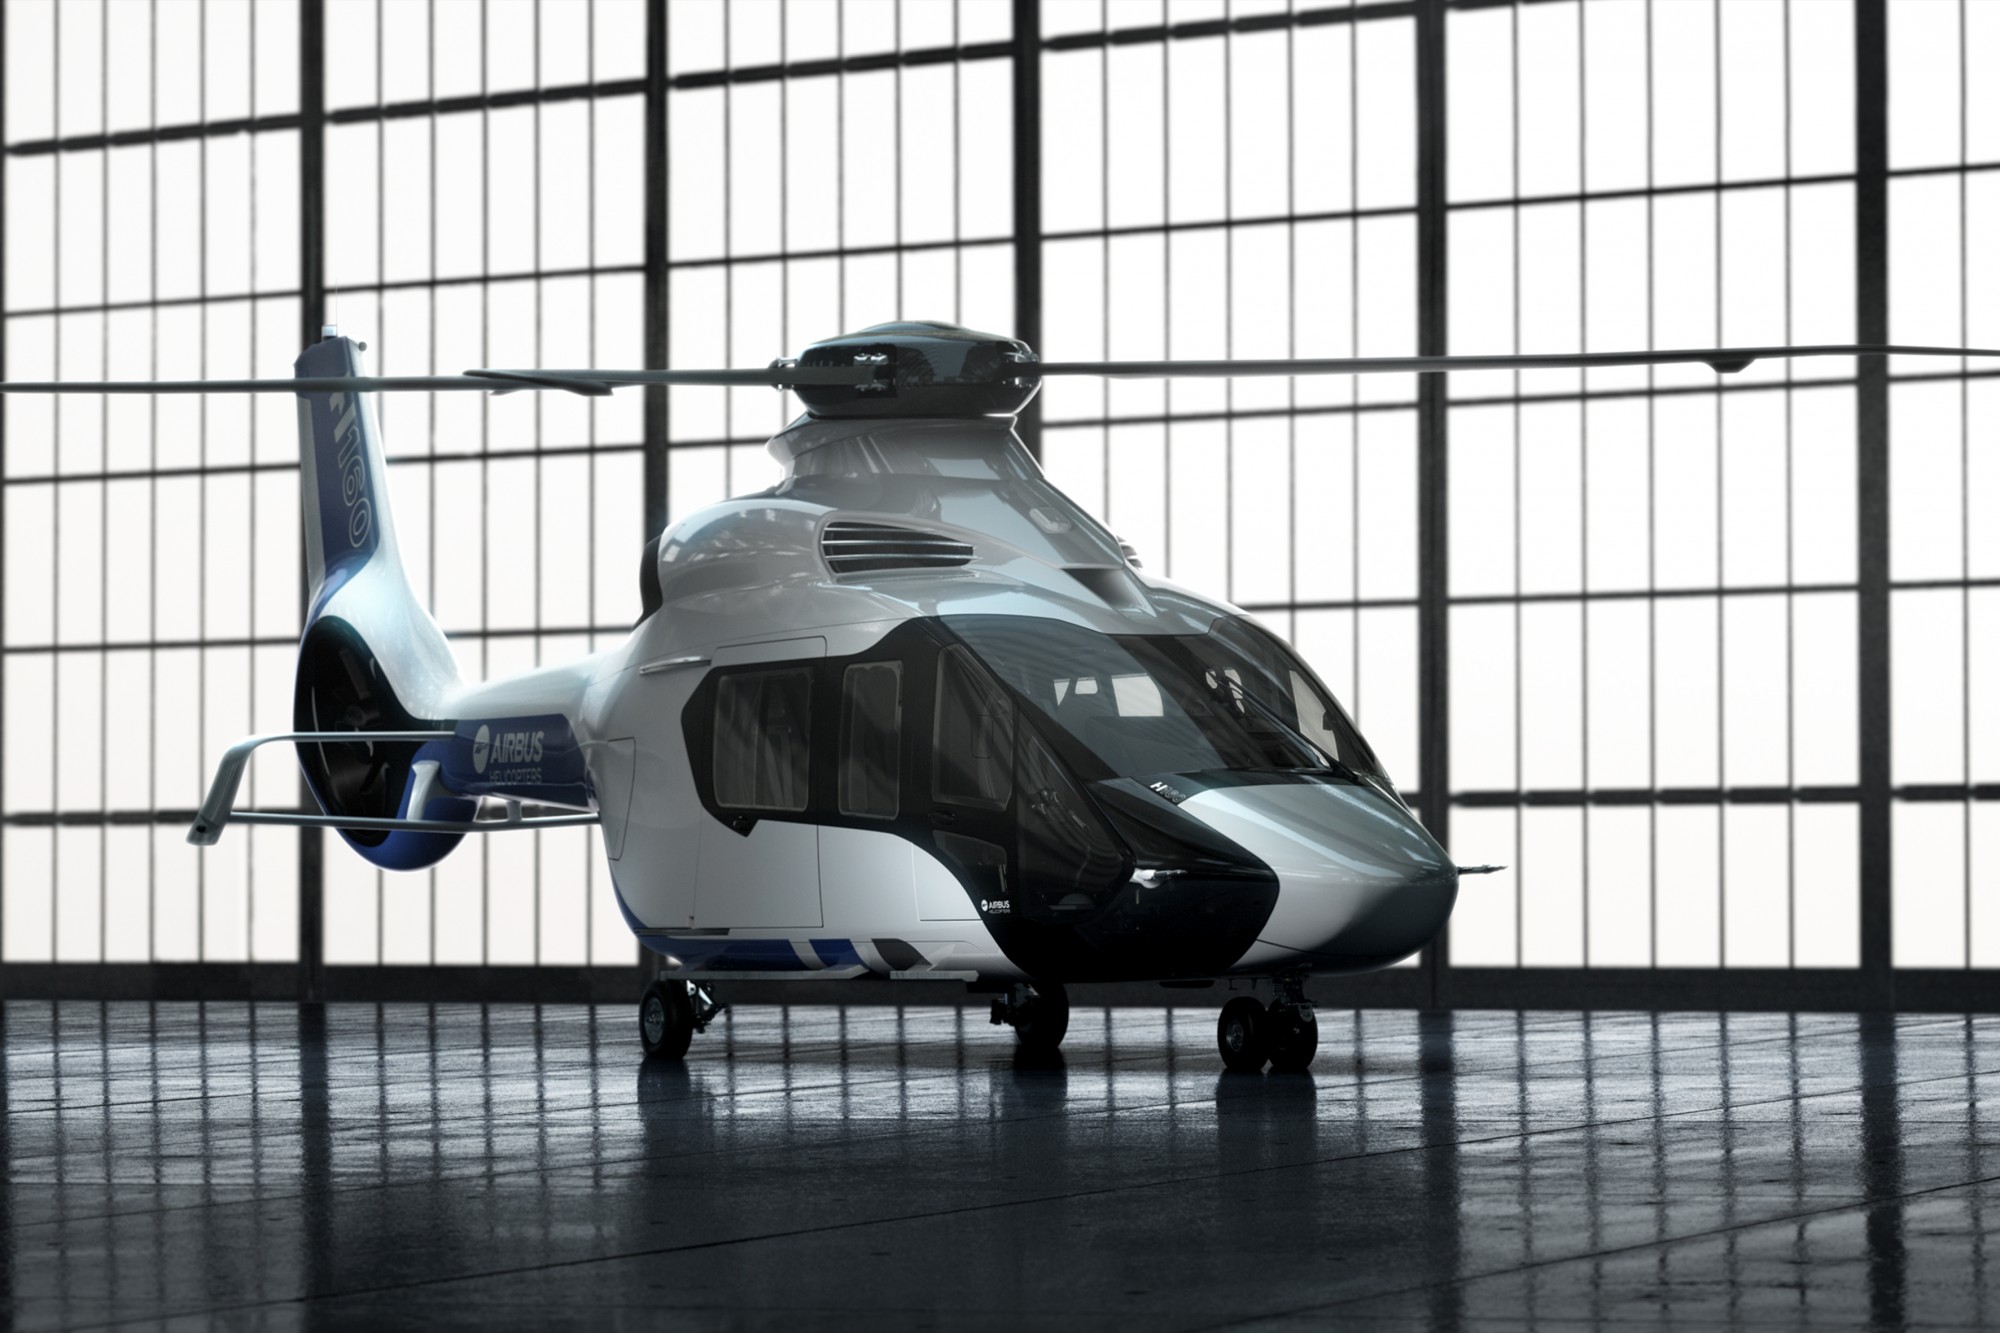 空客h160,空客直升机提供的资料显示,h160直升机属于5.